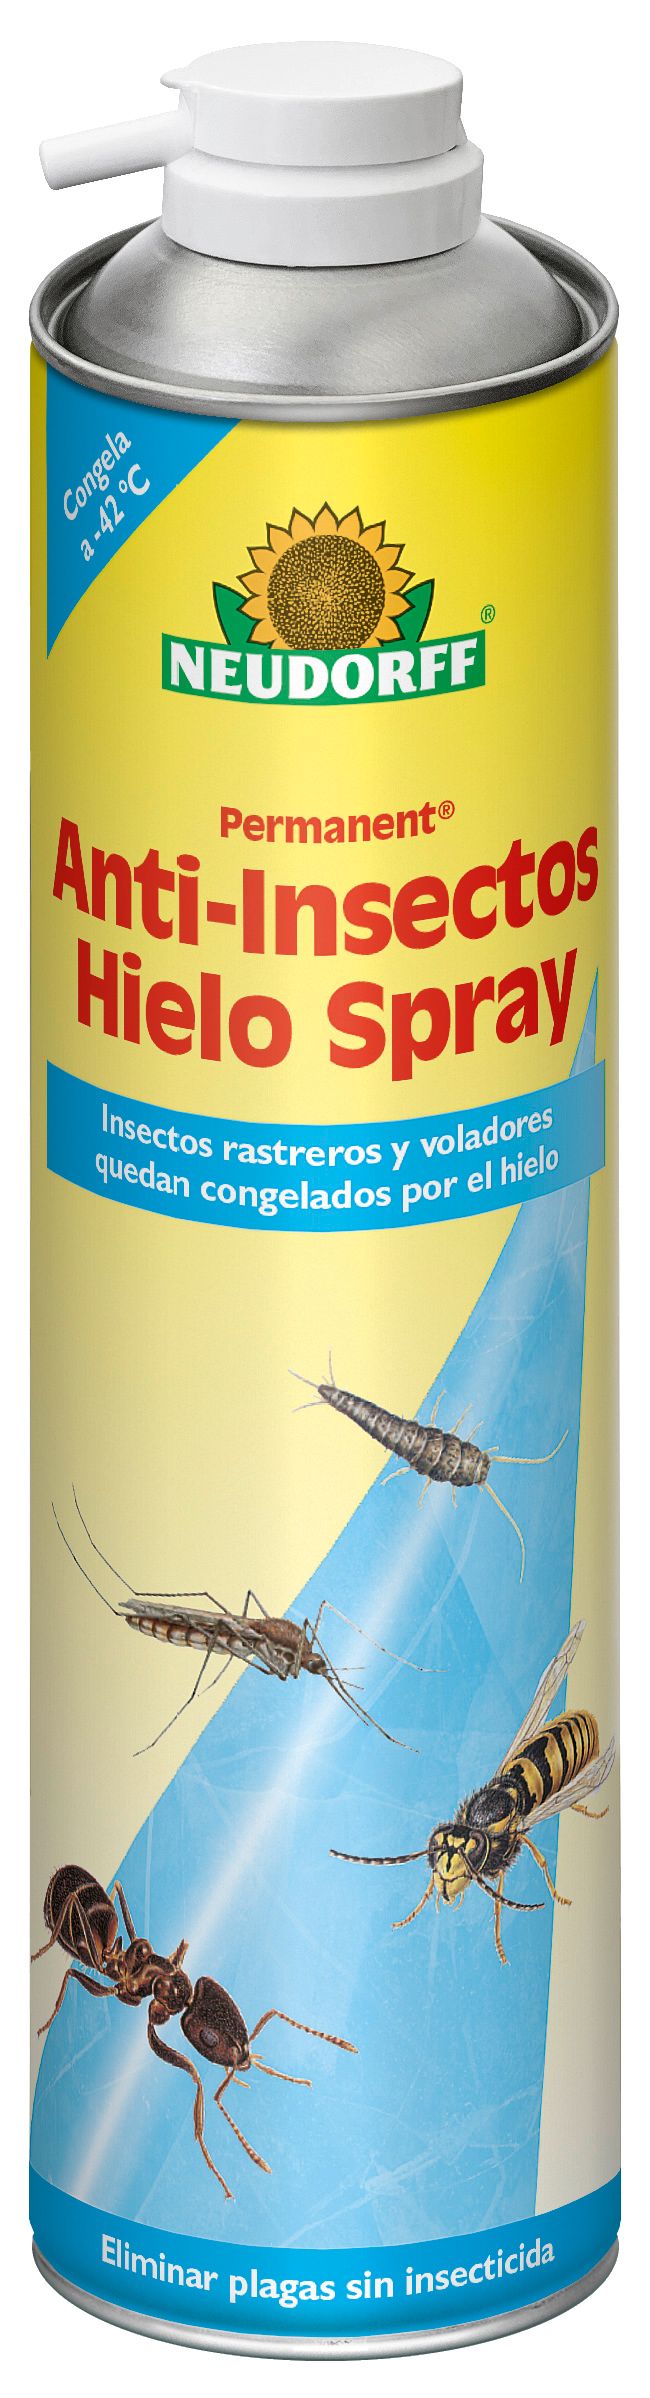 4005240179901_Permanent Anti-Insectos Hielo Spray_300ml_2092_rgb